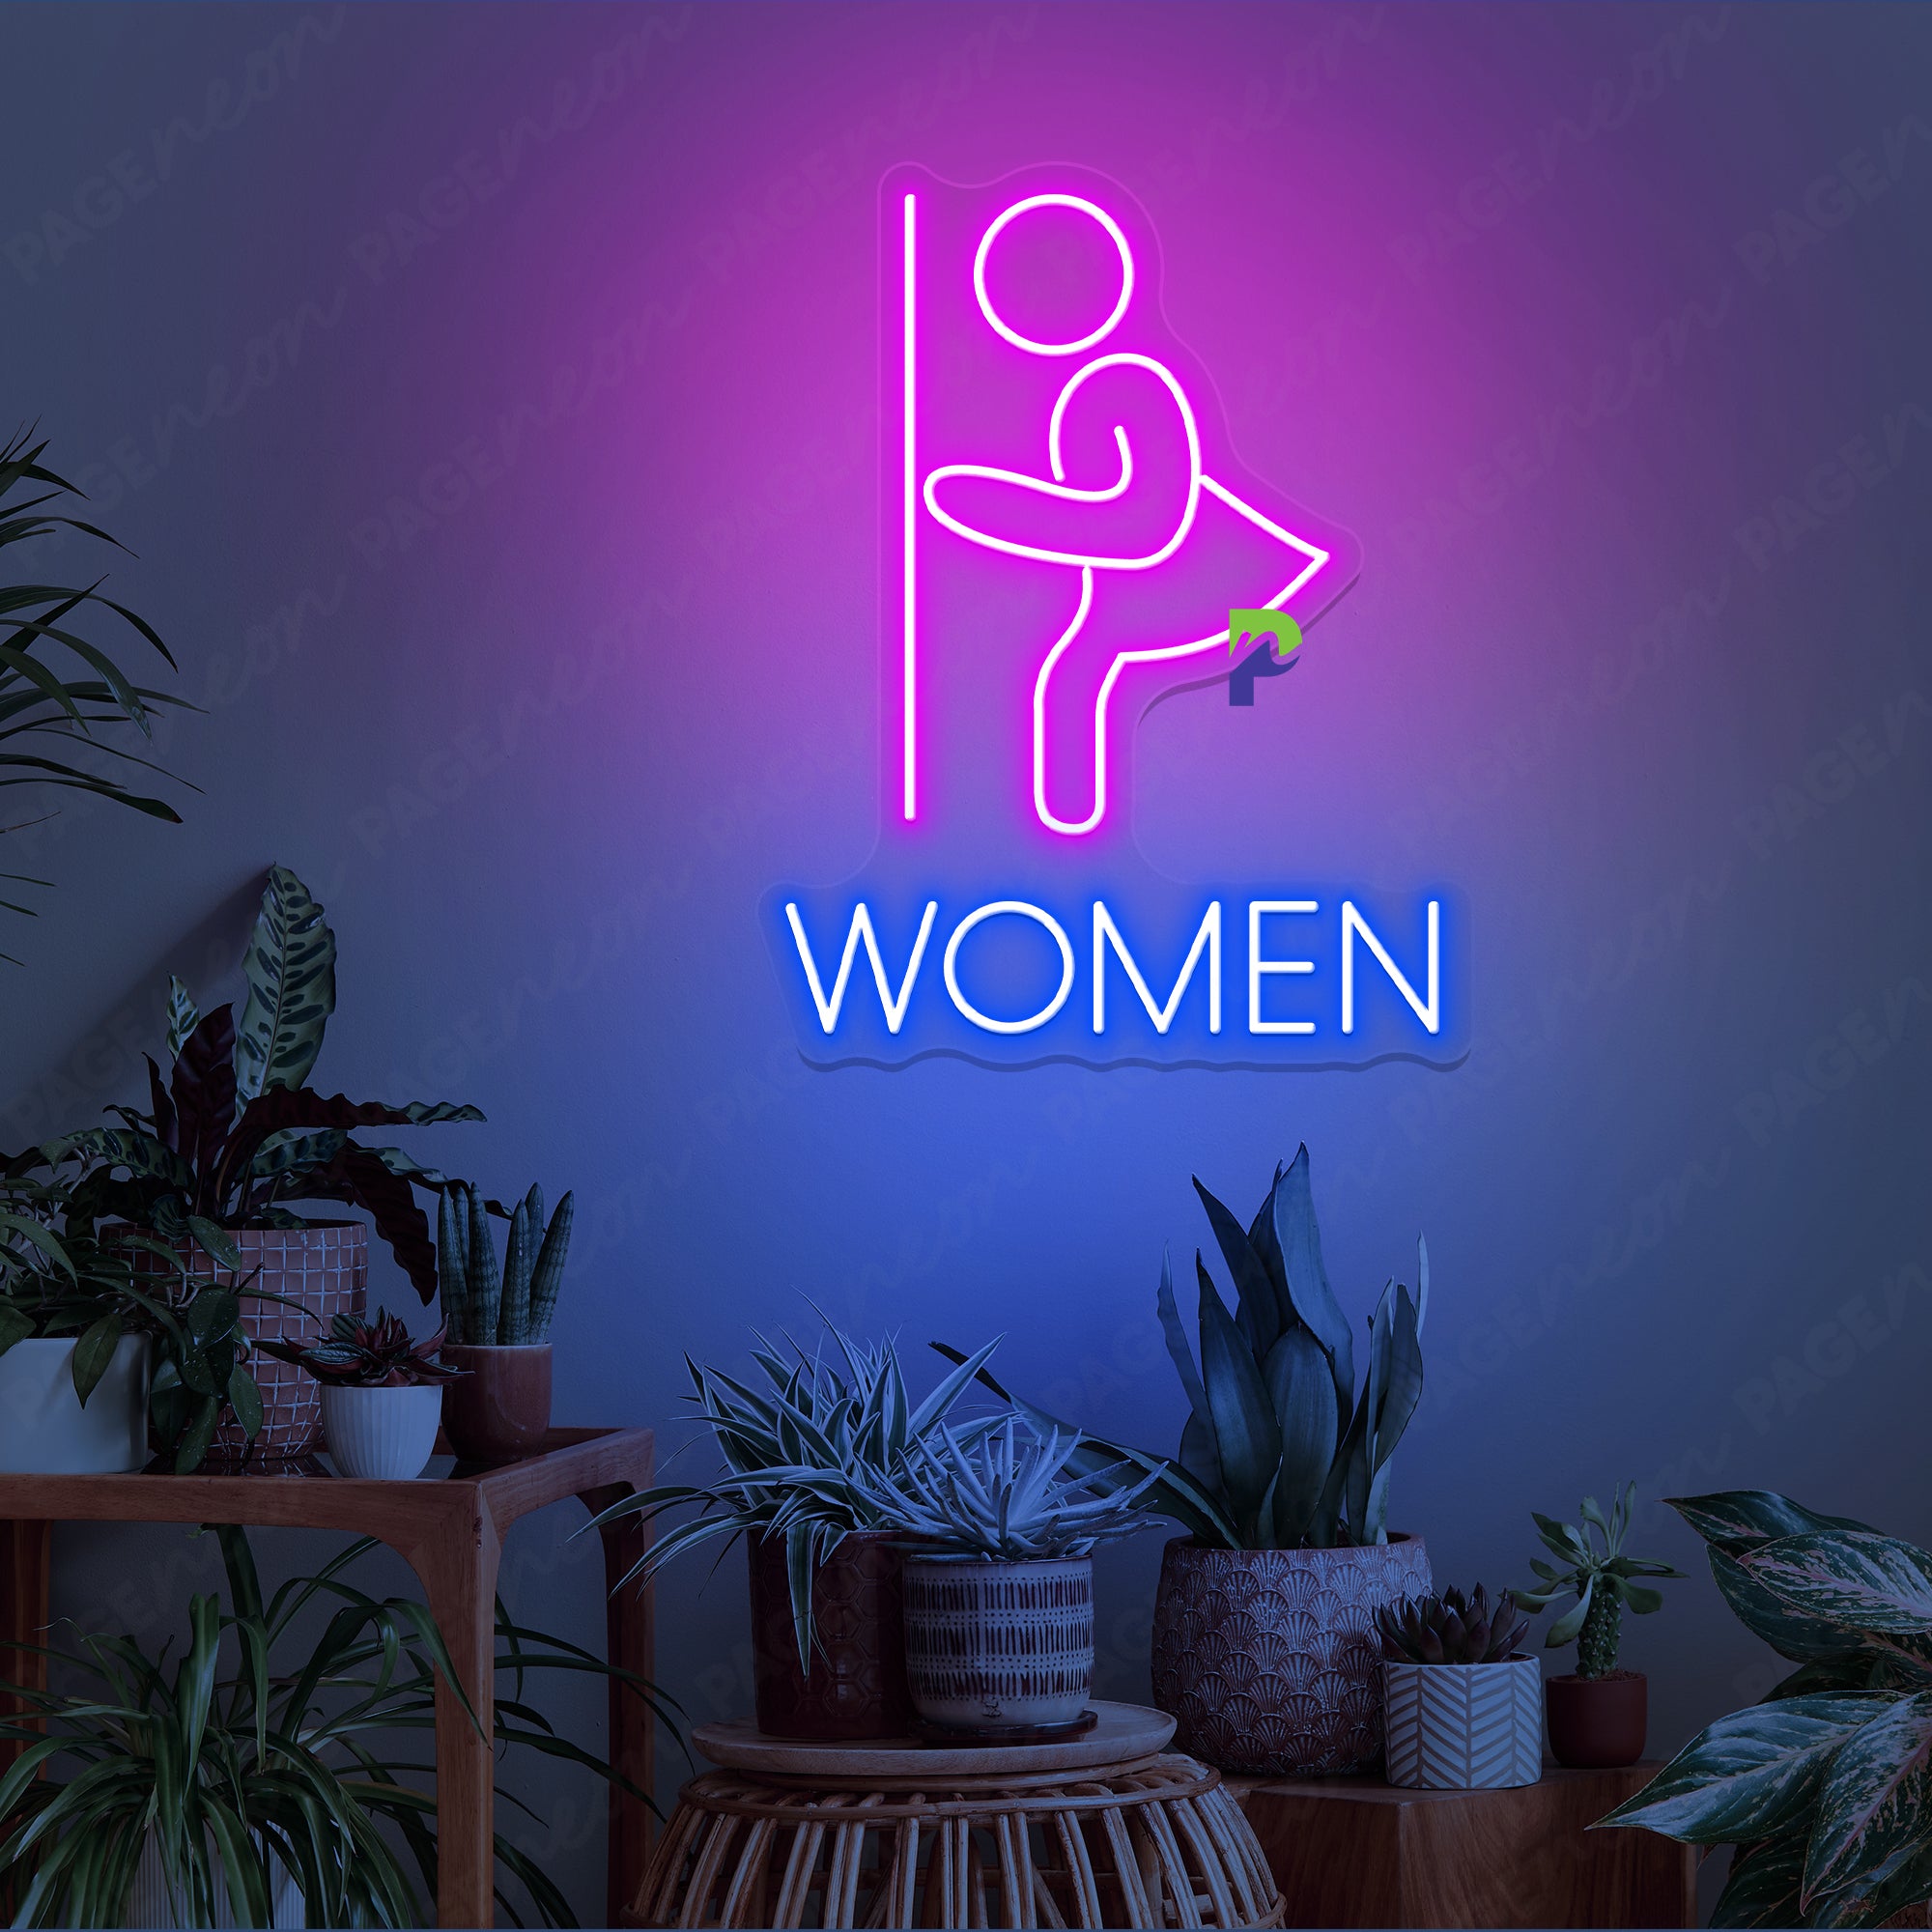 Women Bathroom Neon Sign Instruction Led Light